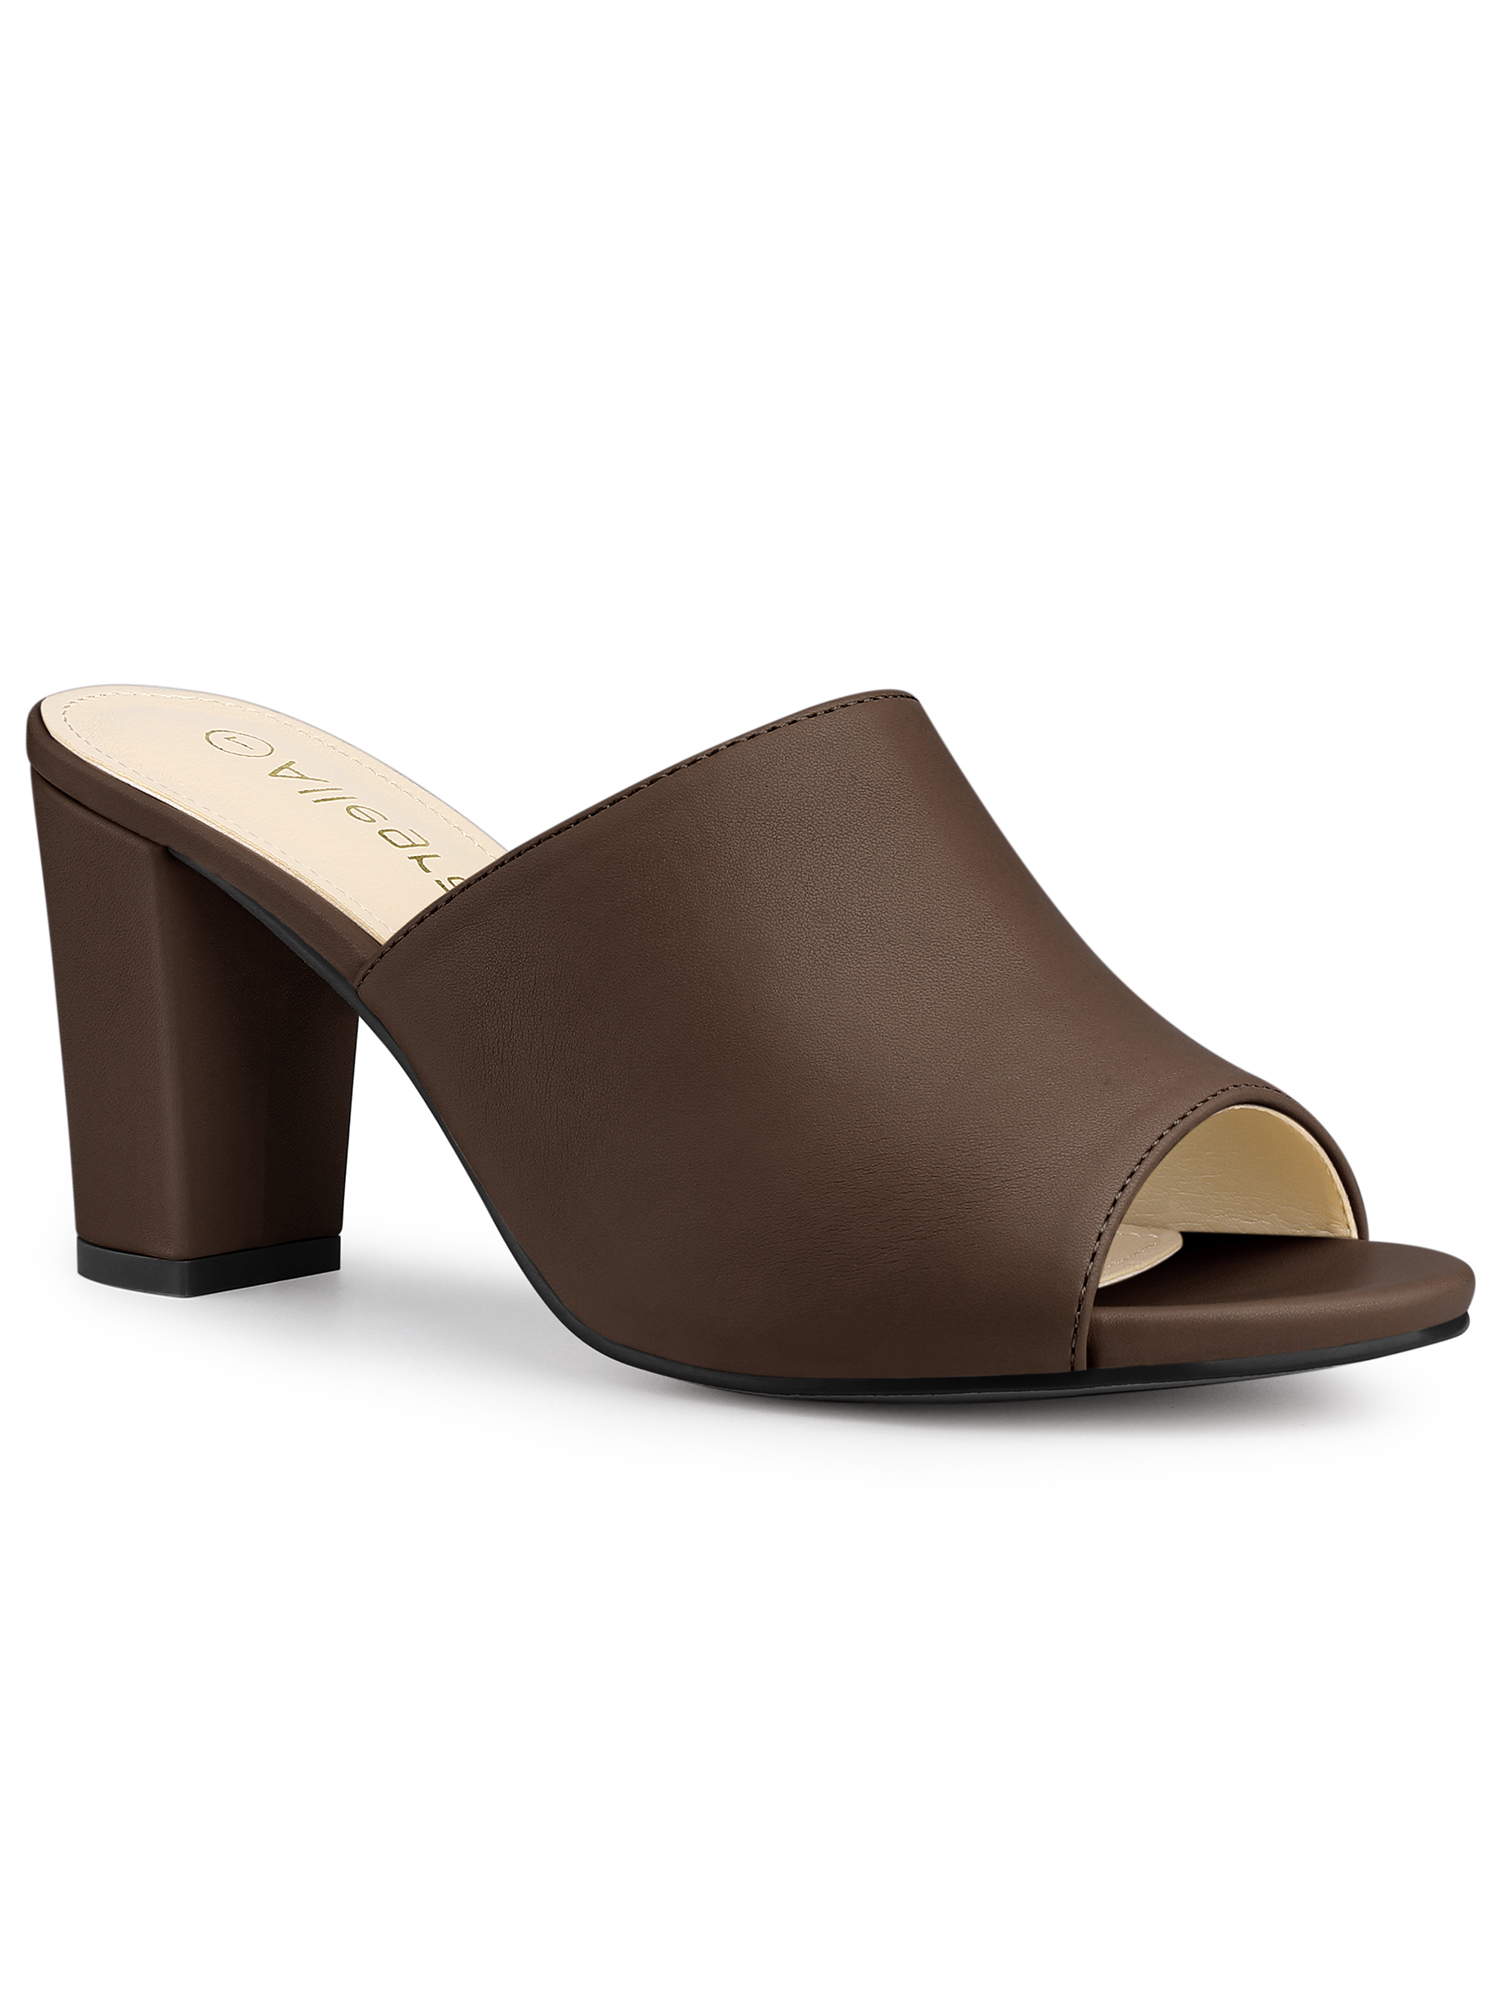 Allegra K Women's Slip on Block Heel Slide Sandals Mules - Walmart.com